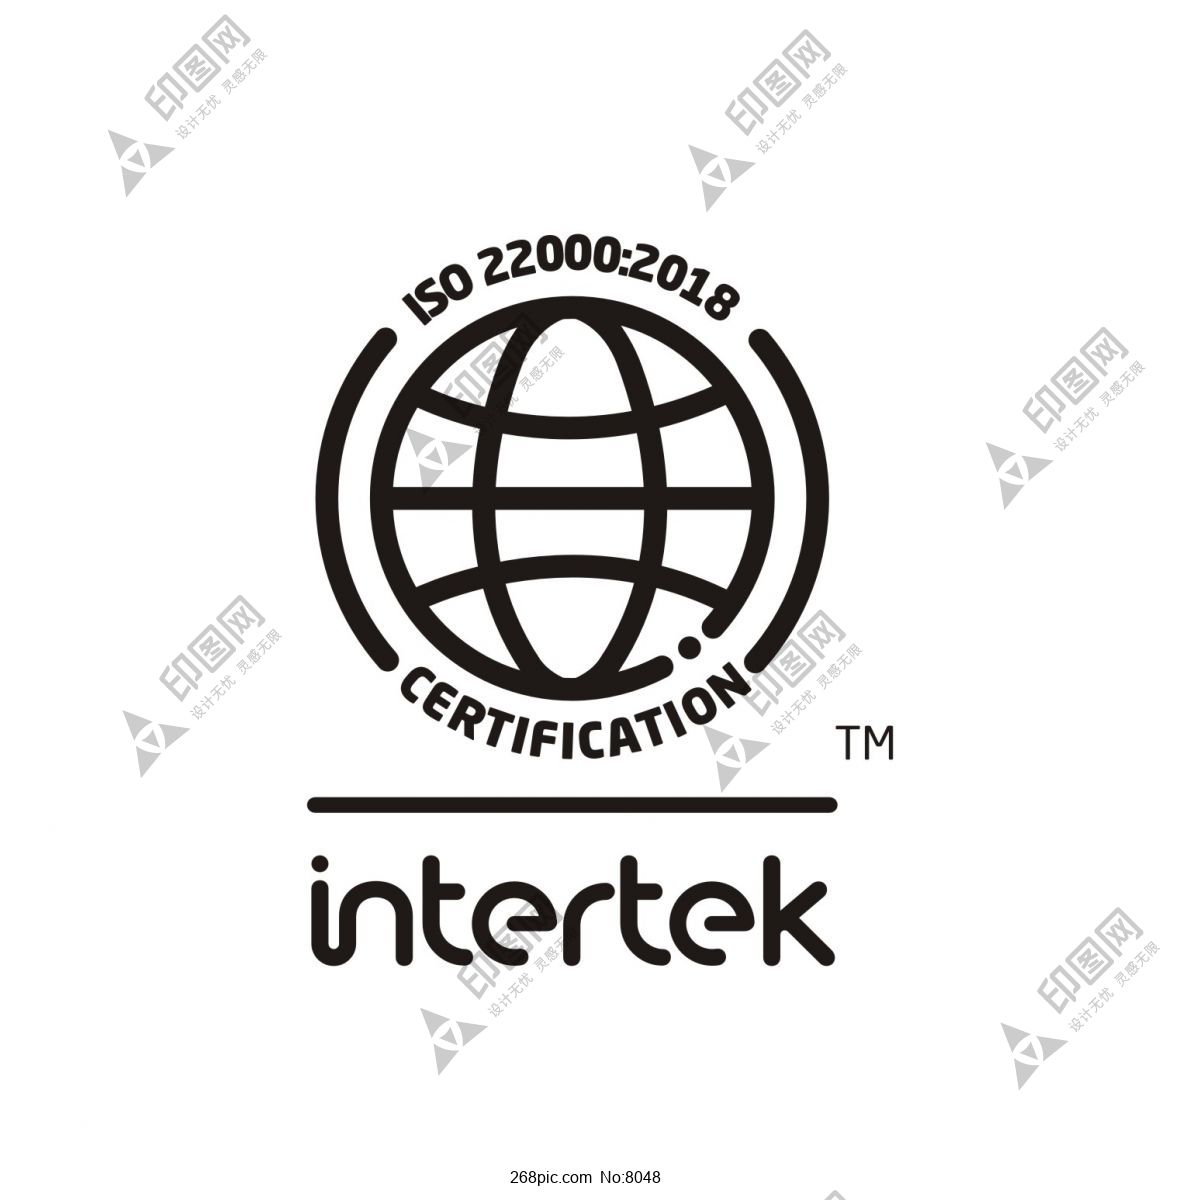 intertek 认证标志